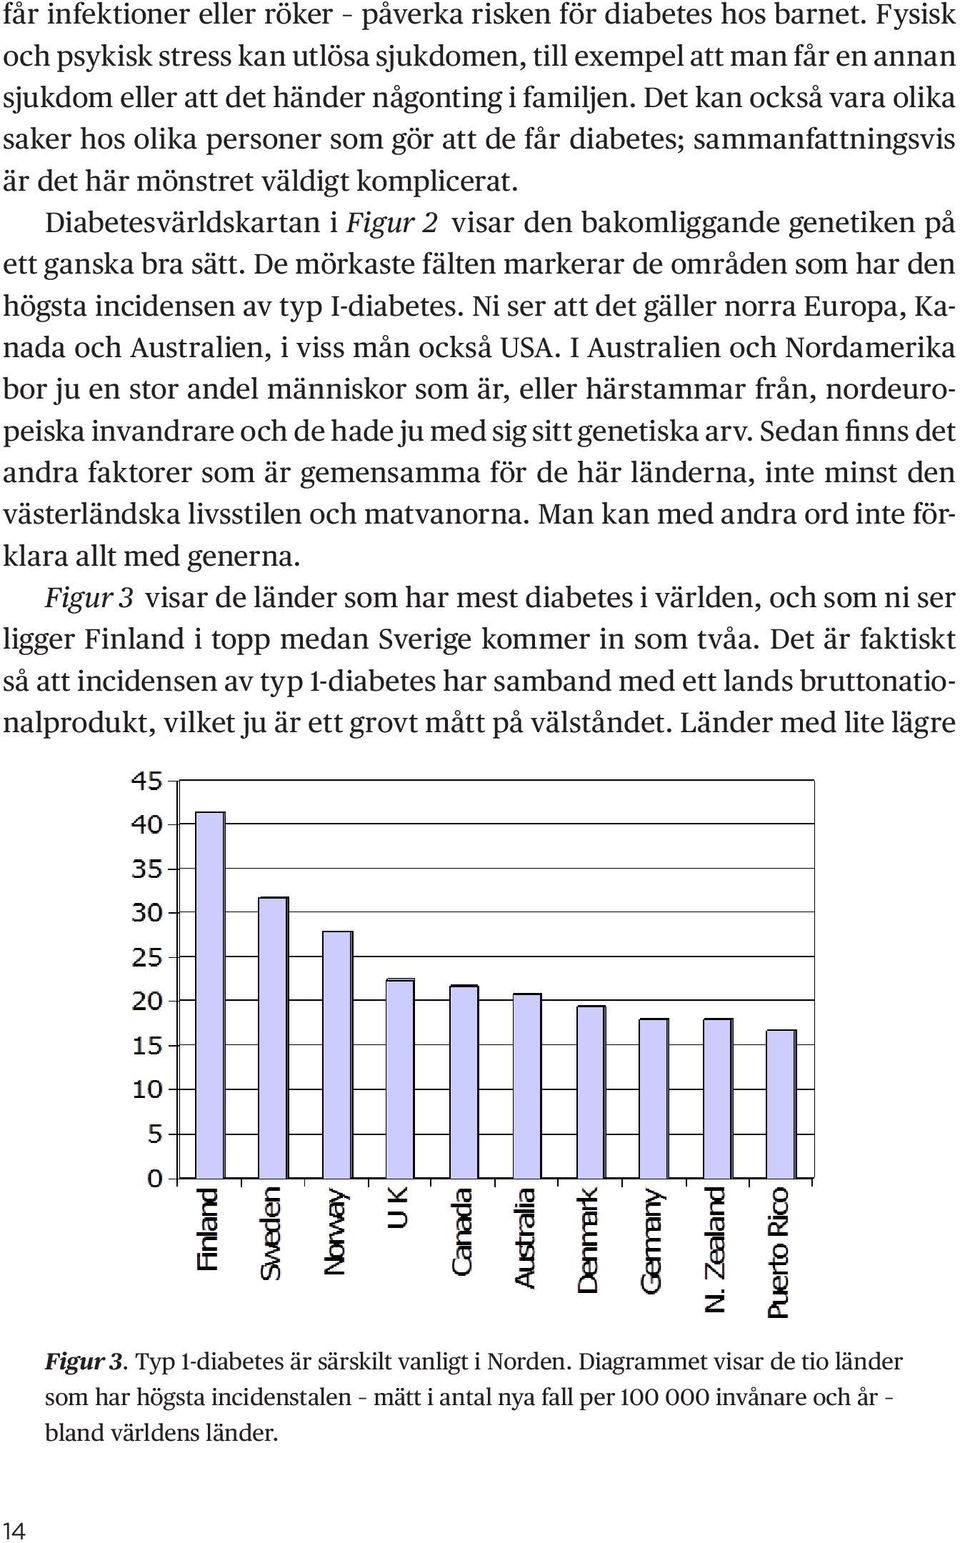 Diabetesvärldskartan i Figur 2 visar den bakomliggande genetiken på ett ganska bra sätt. De mörkaste fälten markerar de områden som har den högsta incidensen av typ I-diabetes.